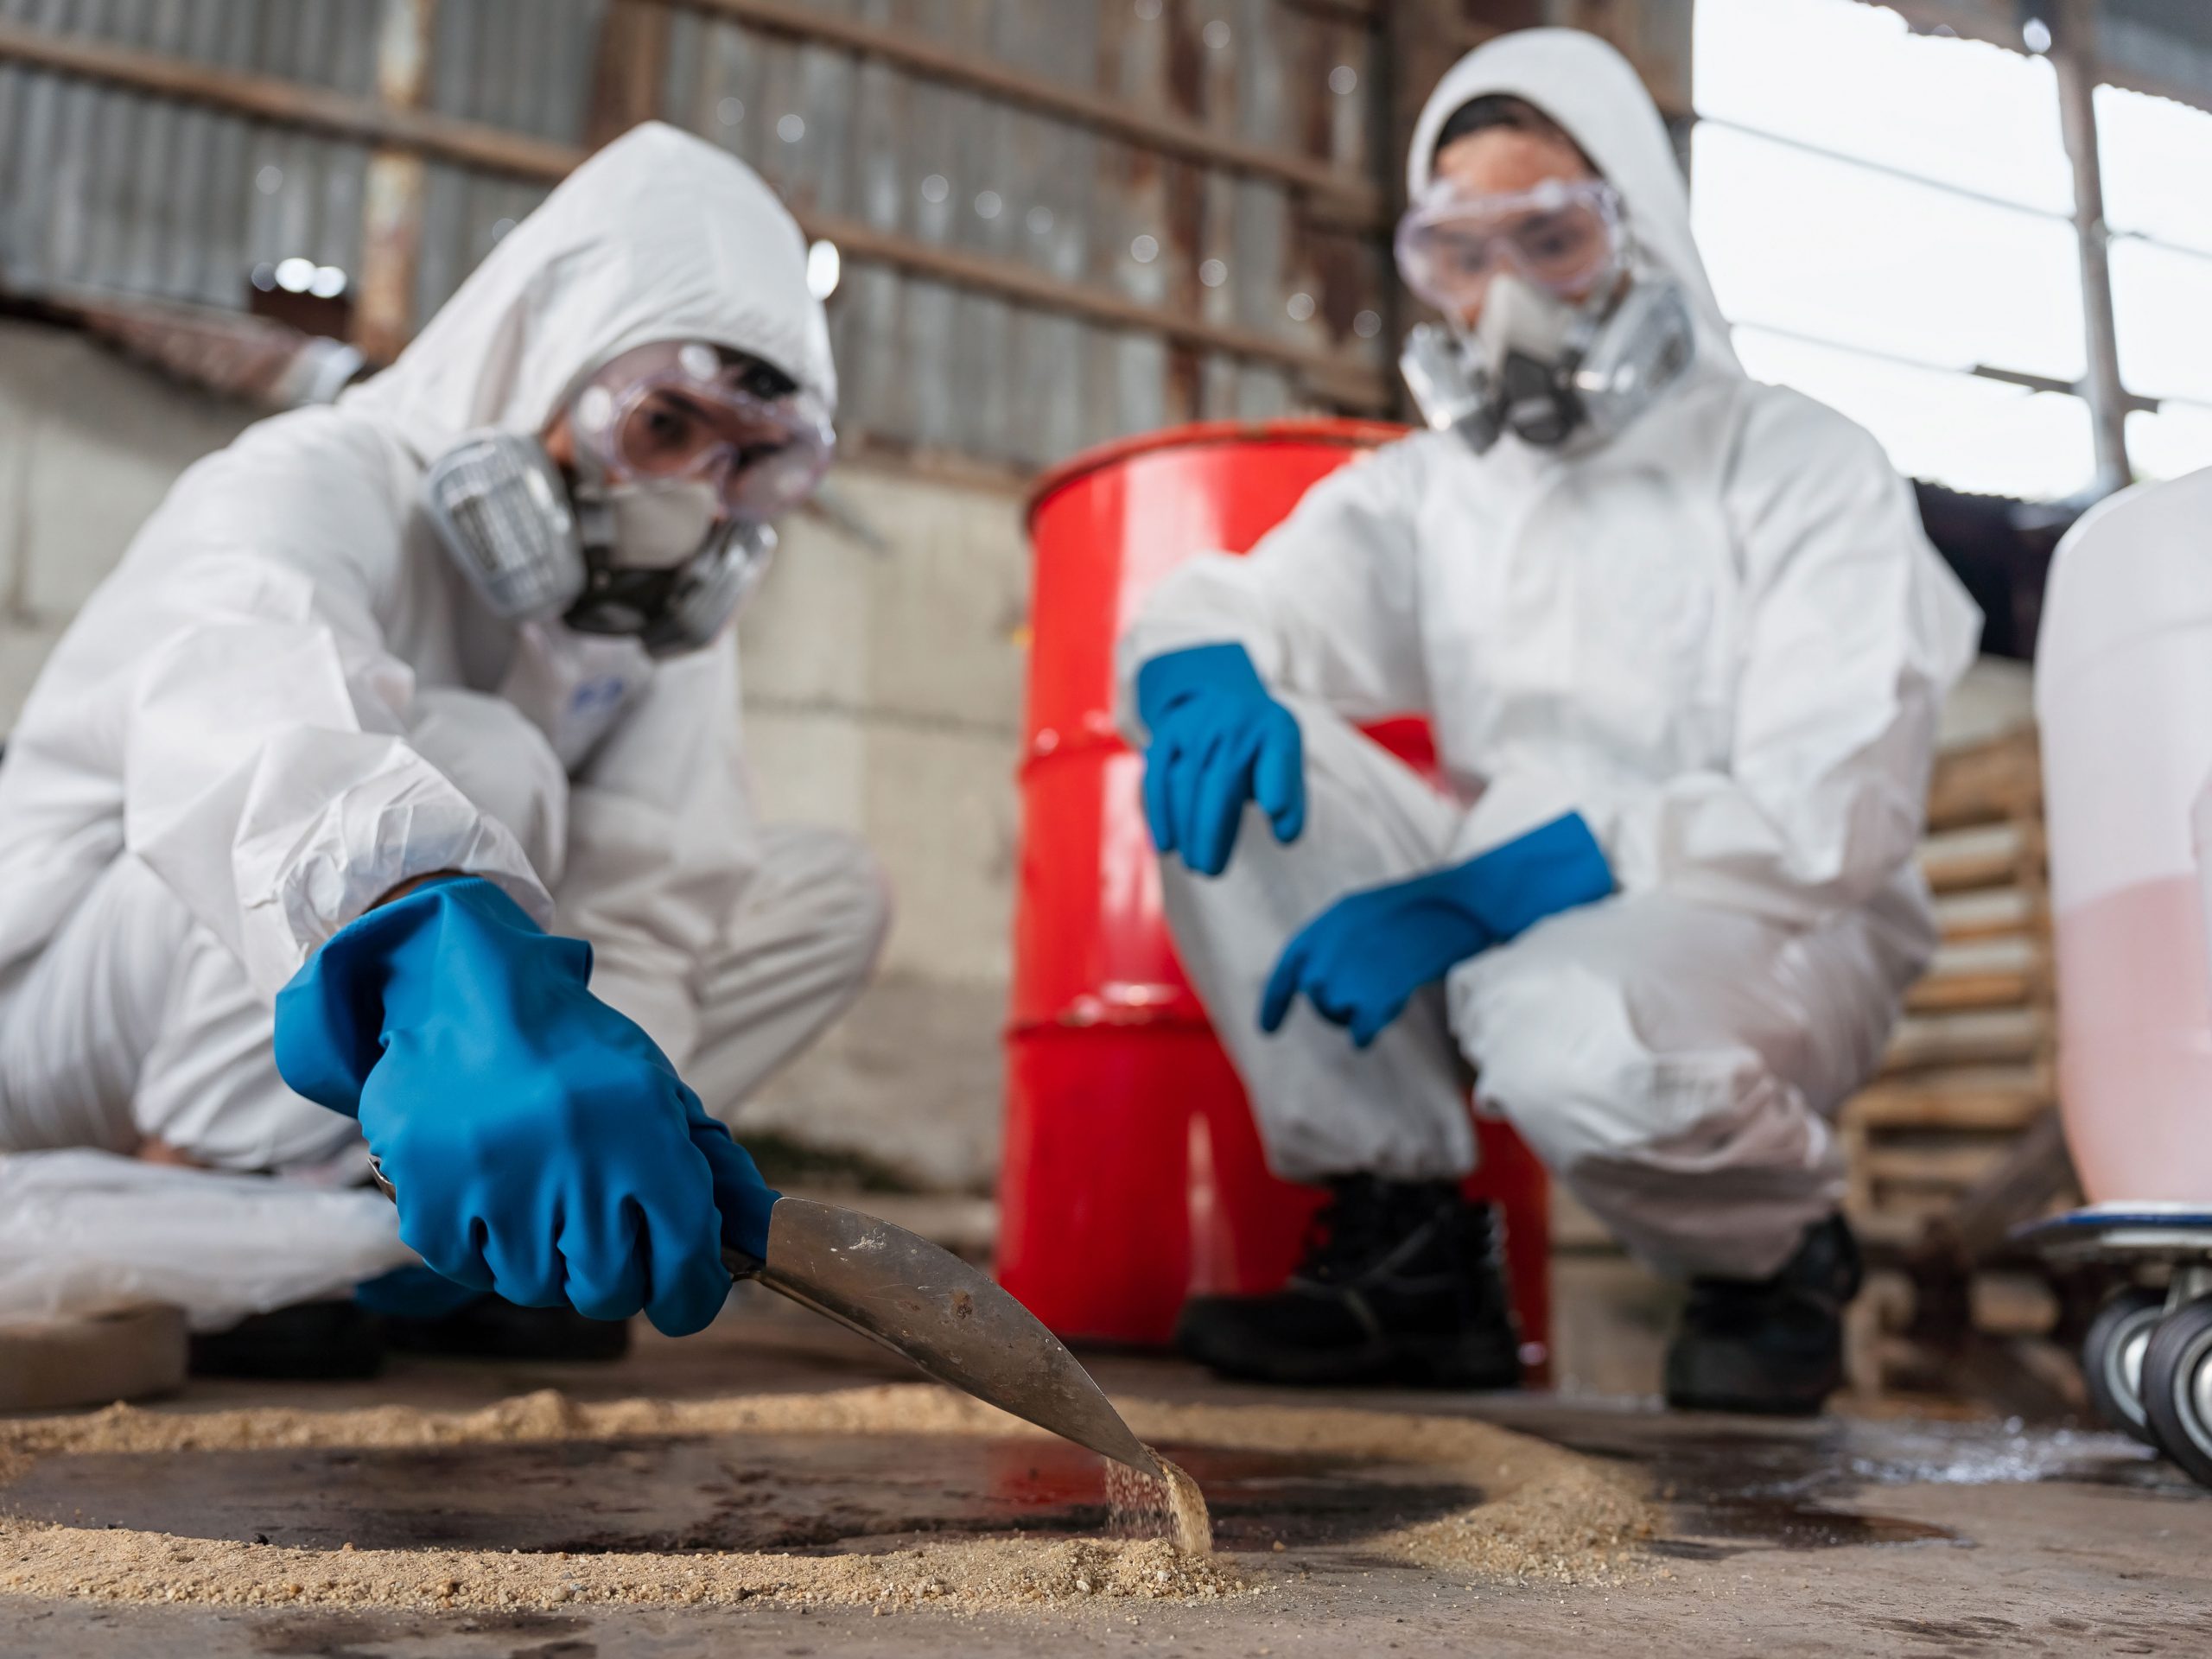 Zwei Chemiker mit PSA-Anzügen und Gasmasken bergen verschüttete Chemikalie auf dem Boden des Fabriklagers.